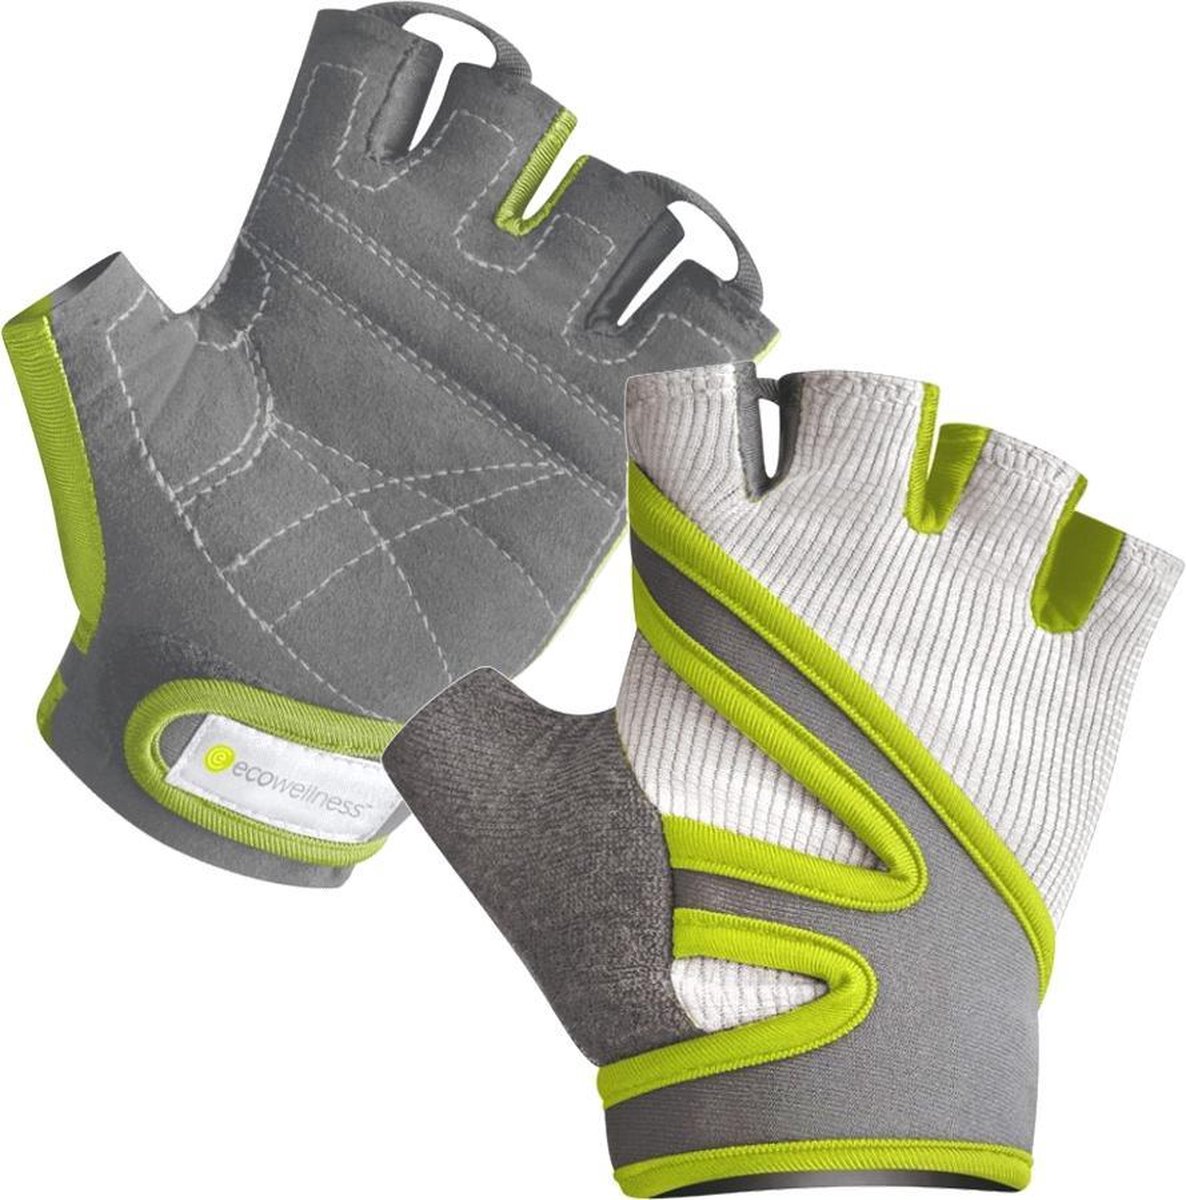 Eco Wellness Fitness Handschoenen Anti Slip - Sport handschoen - Maat L-XL - ECO Wellness